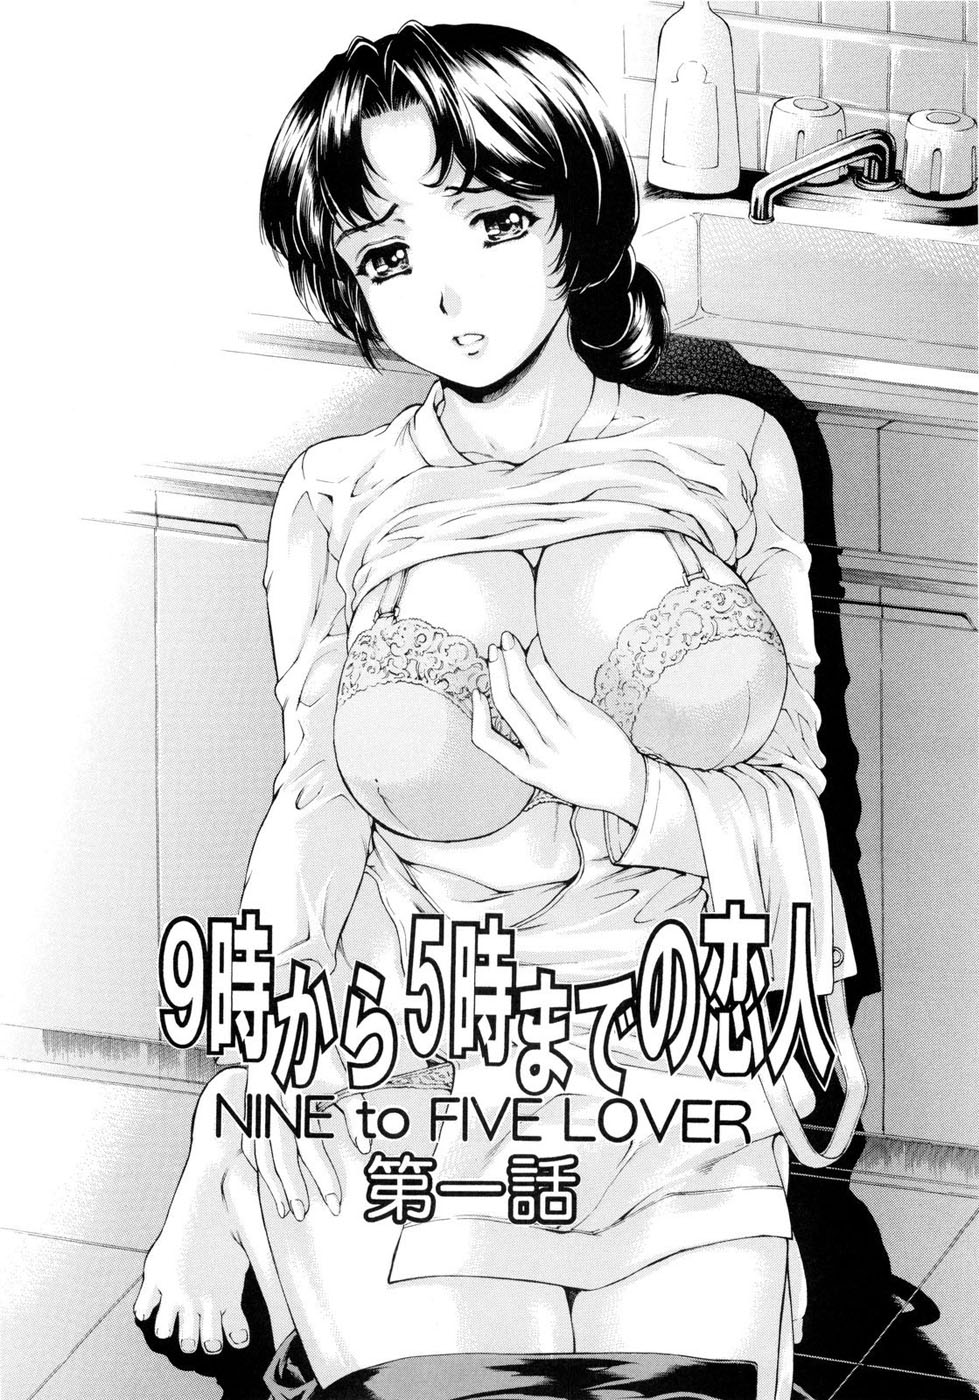 Amante de 9 a 5 (nine to five lover) Manga Hentai Incesto